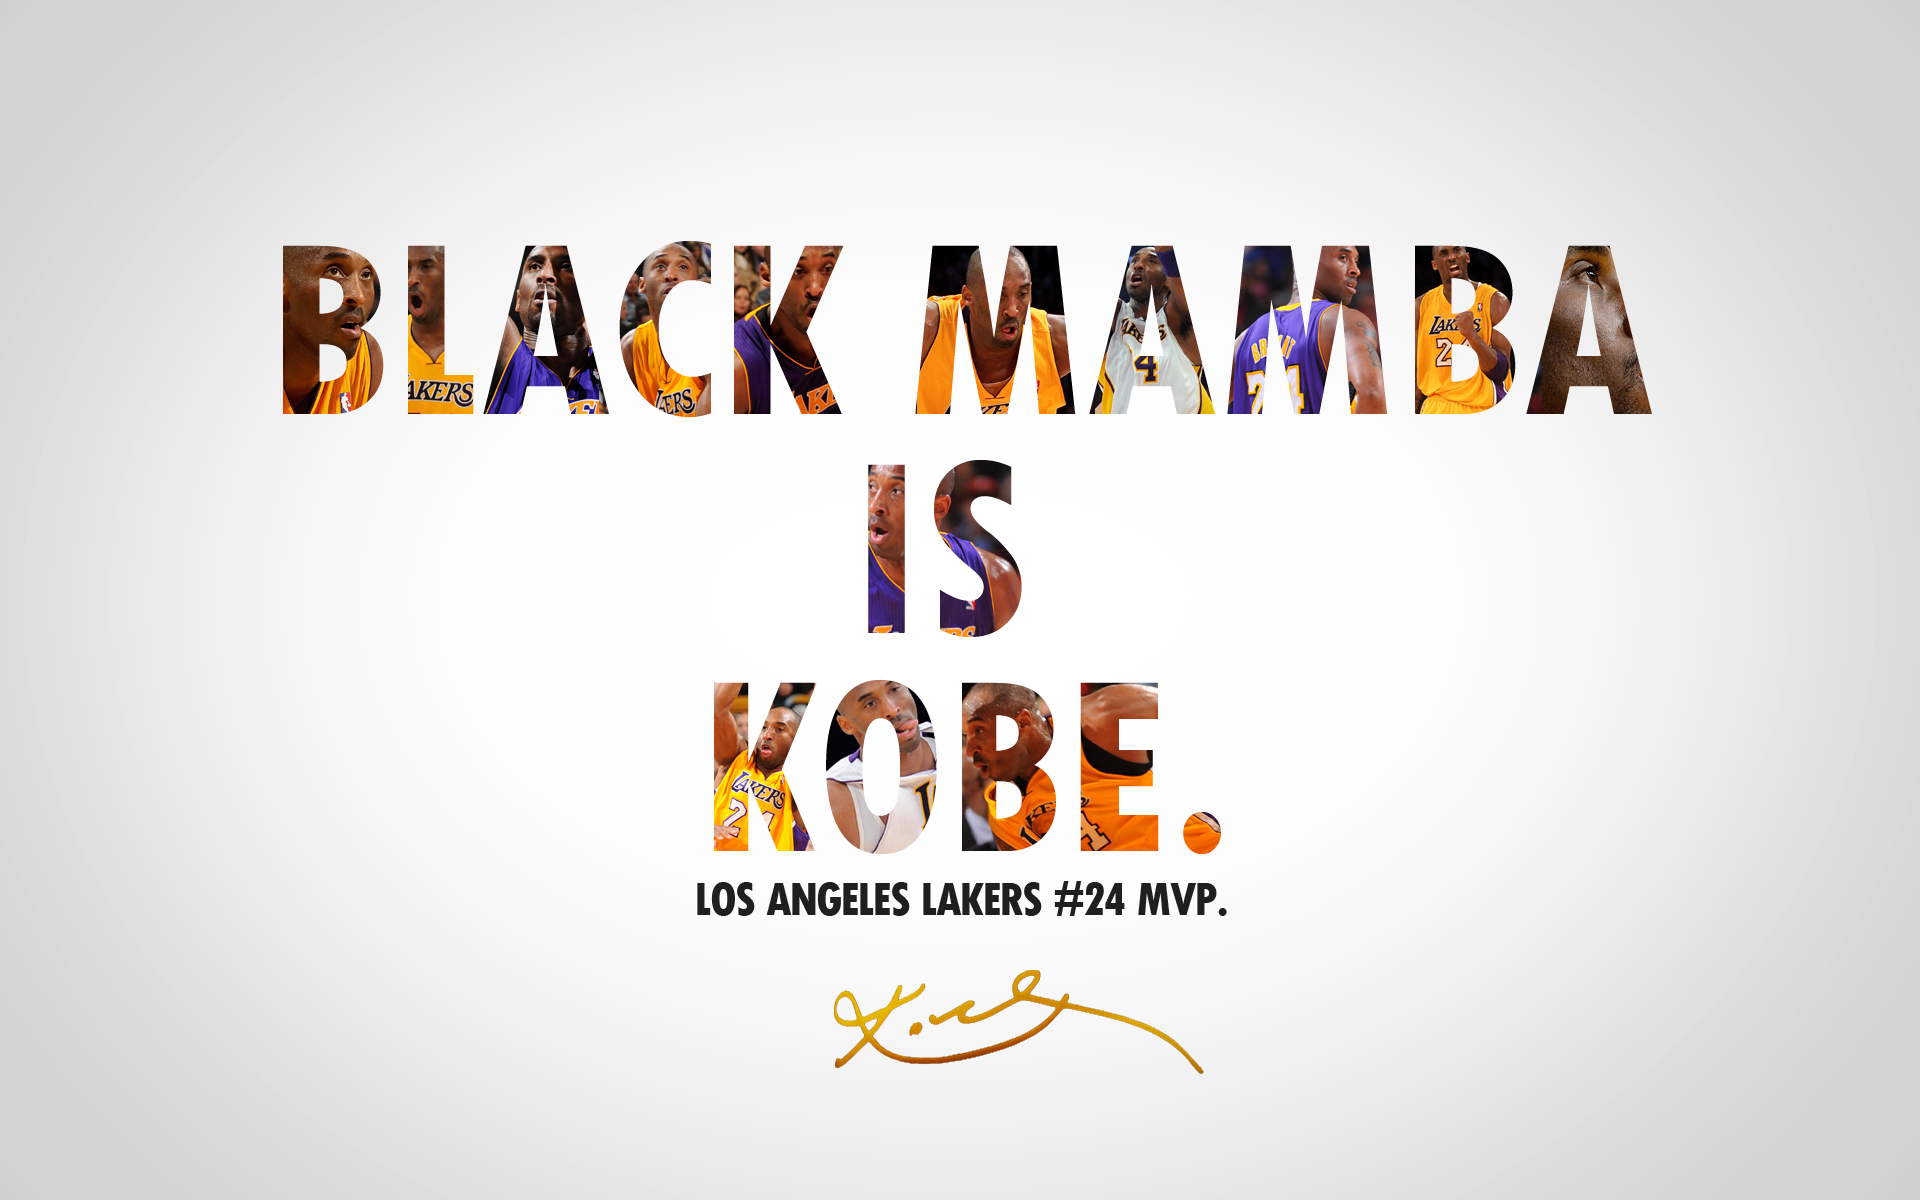 Descarga gratis la imagen Baloncesto, Nba, Deporte, Kobe Bryant, Los Lakers De Los Angeles en el escritorio de tu PC